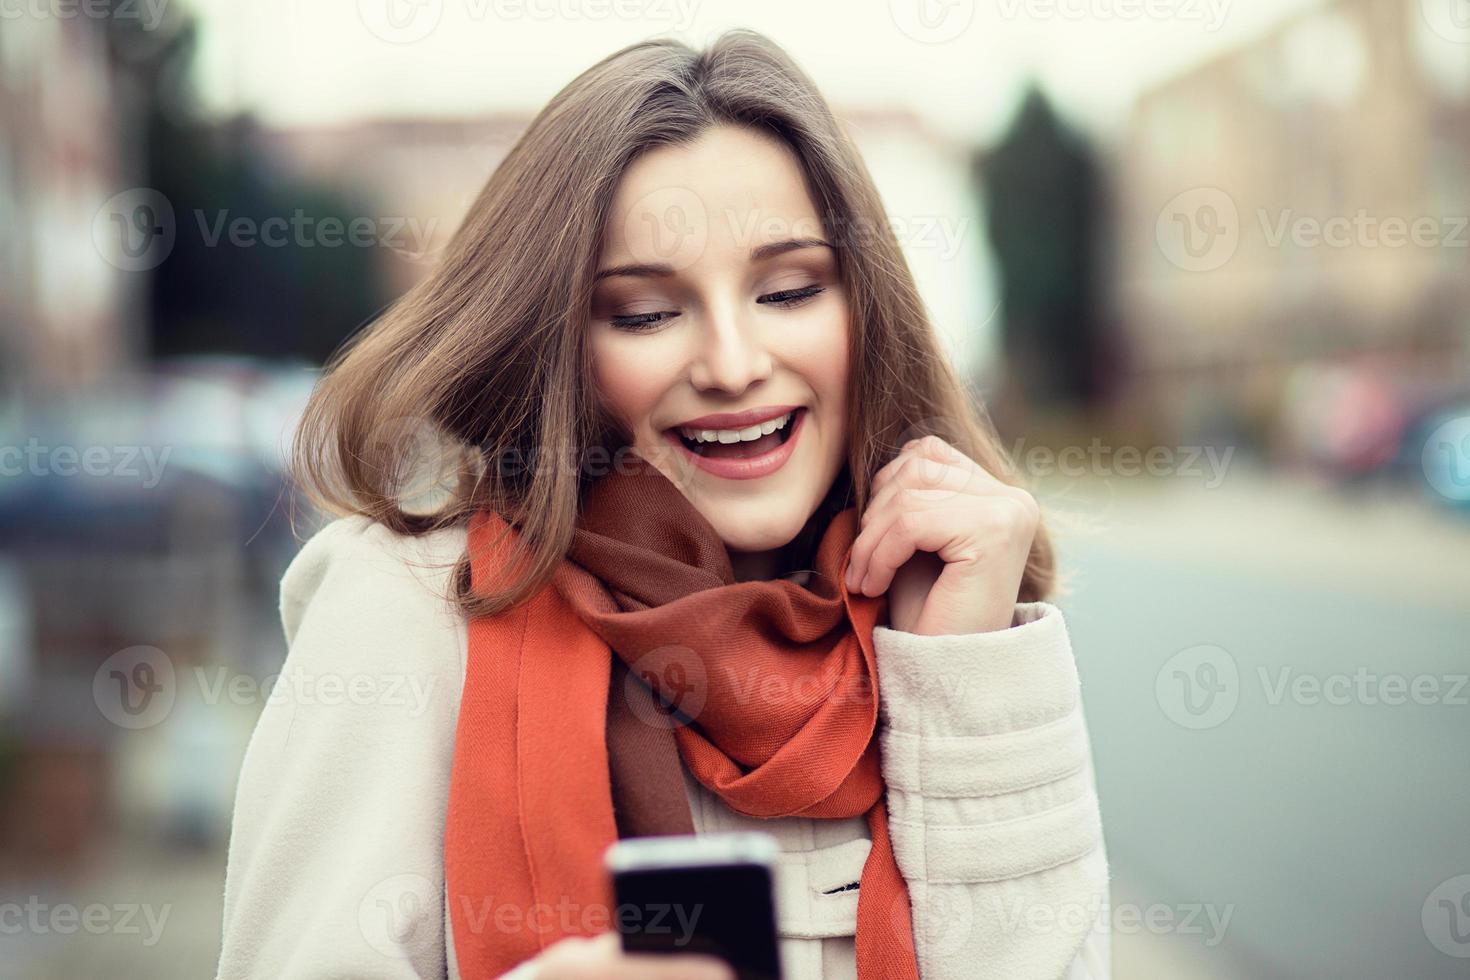 Frau SMS. Nahaufnahme junges glückliches lächelndes fröhliches schönes Frauenmädchen, das Handy liest, das SMS isolierten Stadtbildhintergrund im Freien sendet. positiver Gesichtsausdruck menschliche Emotionen. multikulturelles, gemischtes Rennen, asiatisches russisches Modell foto